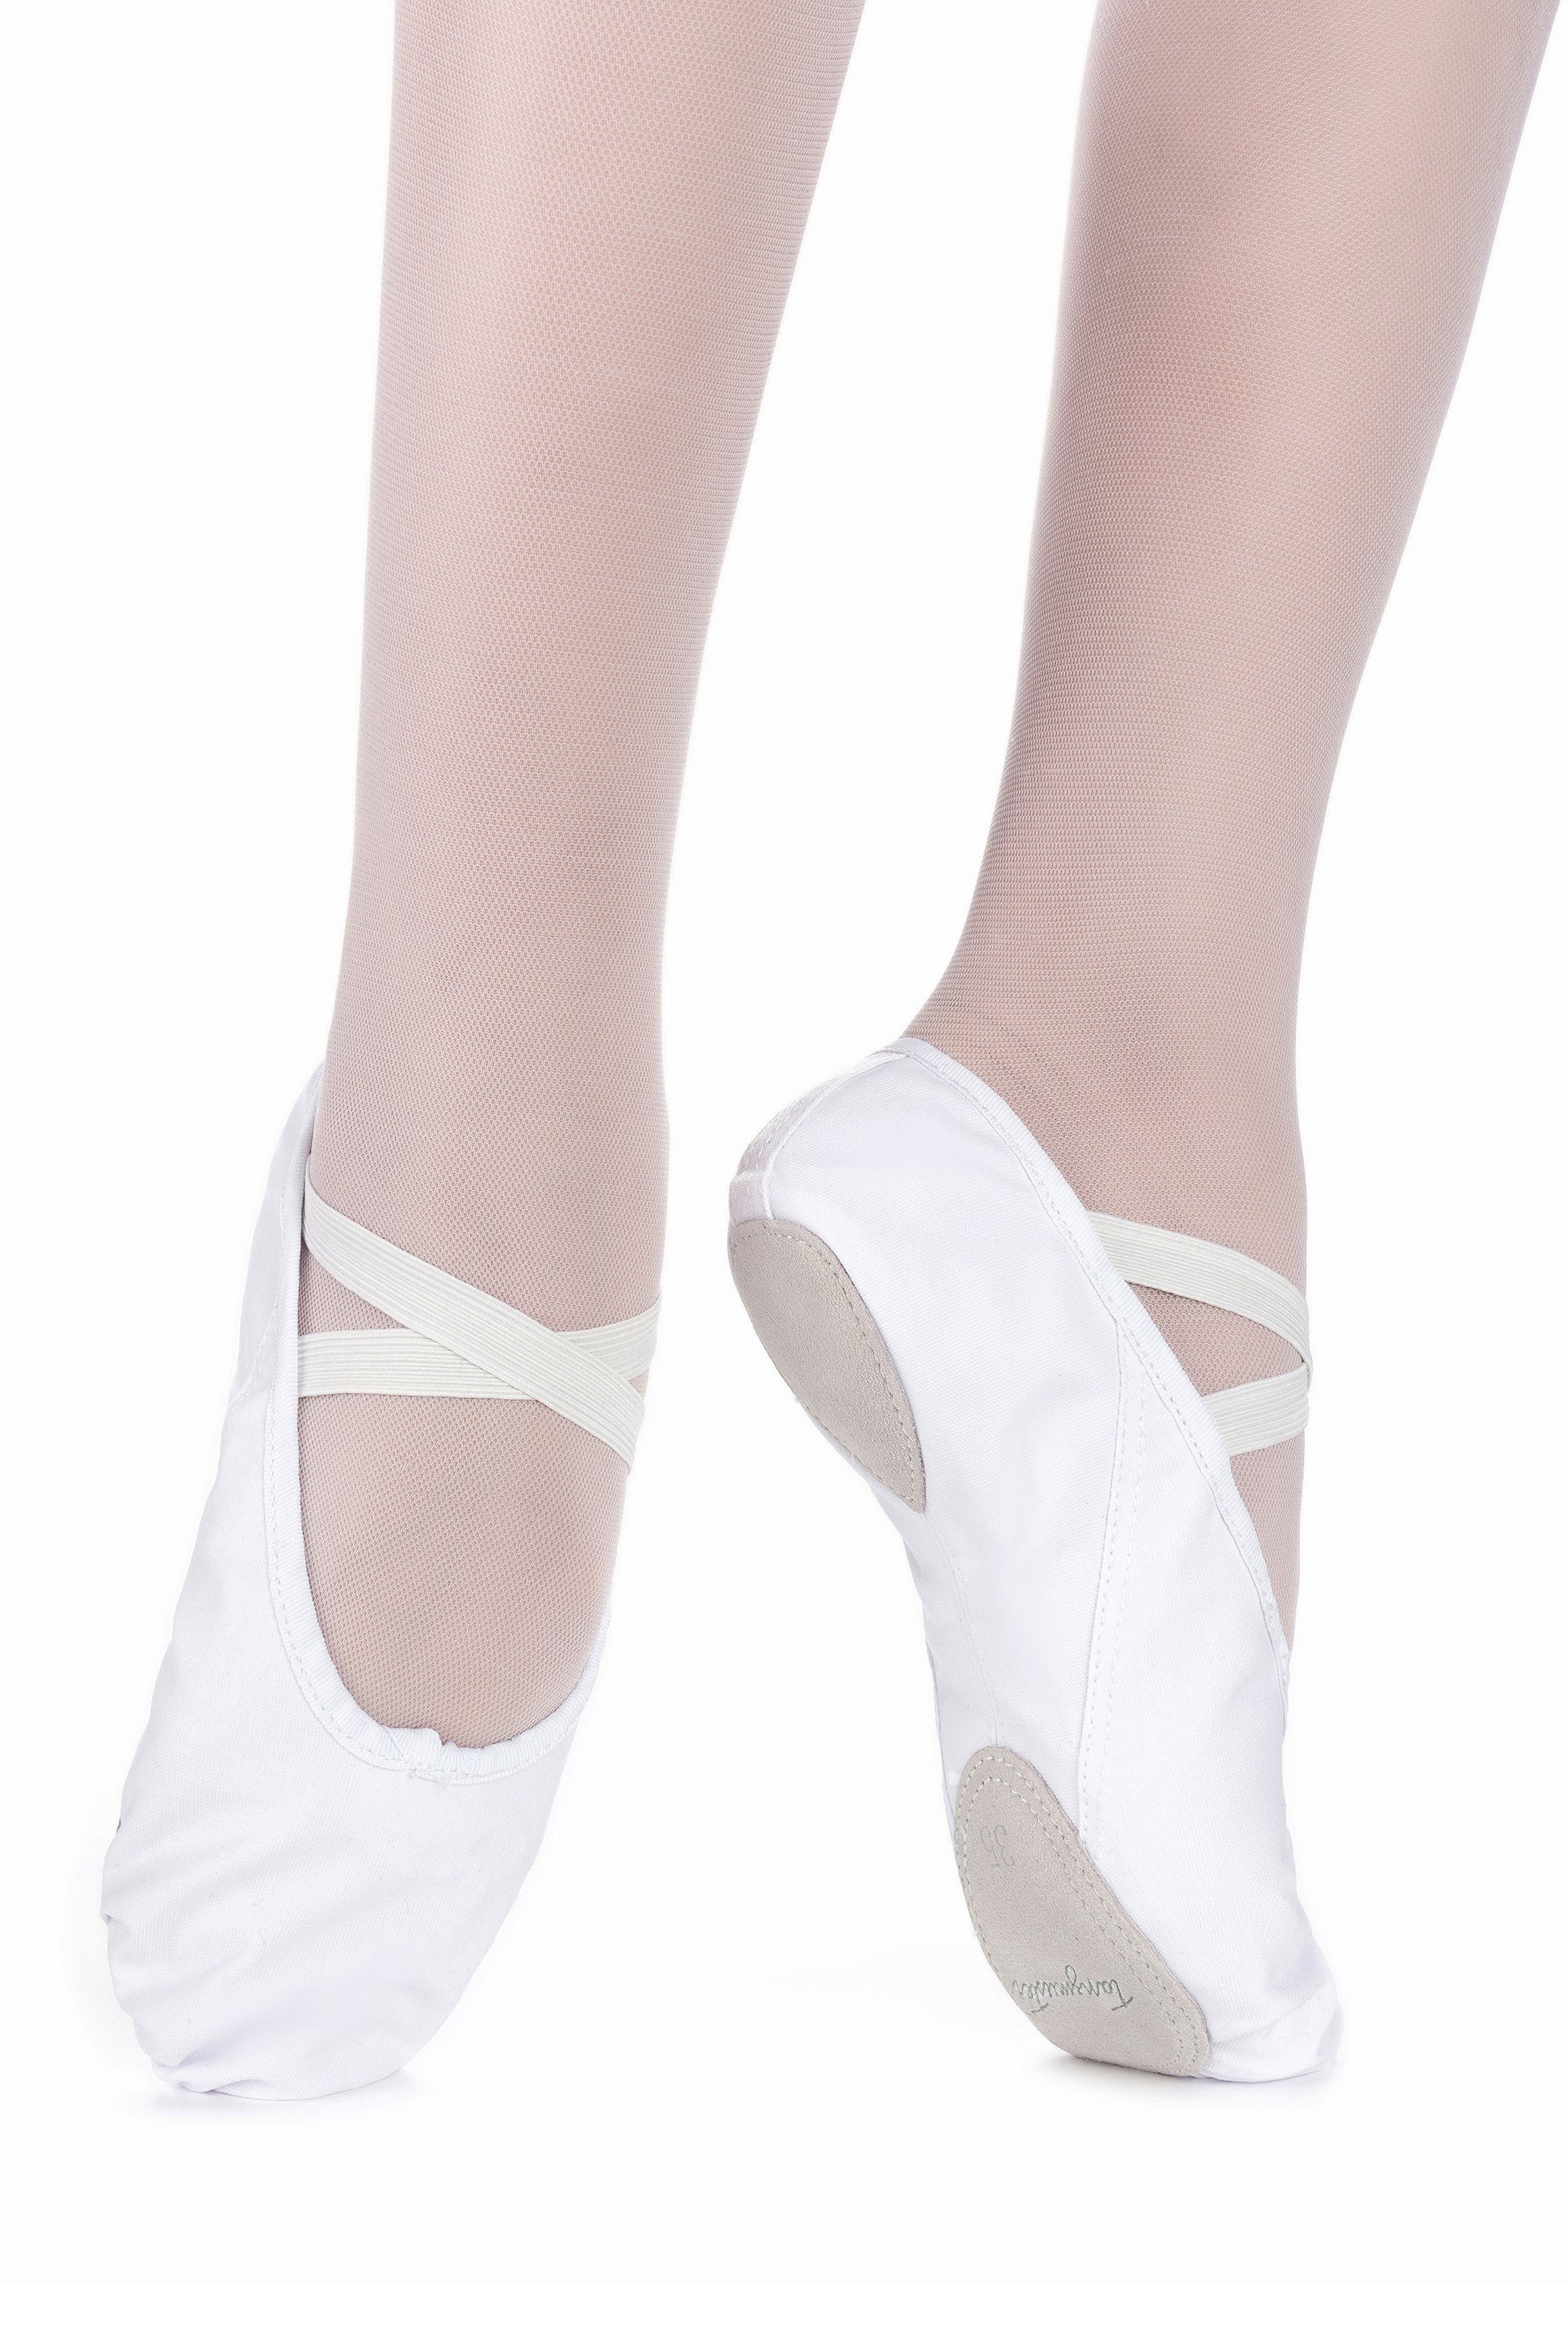 Mädchen tanzmuster für Charlie Ballettschläppchen Tanzschuh mit weiß Ballettschuhe Ledersohle geteilter